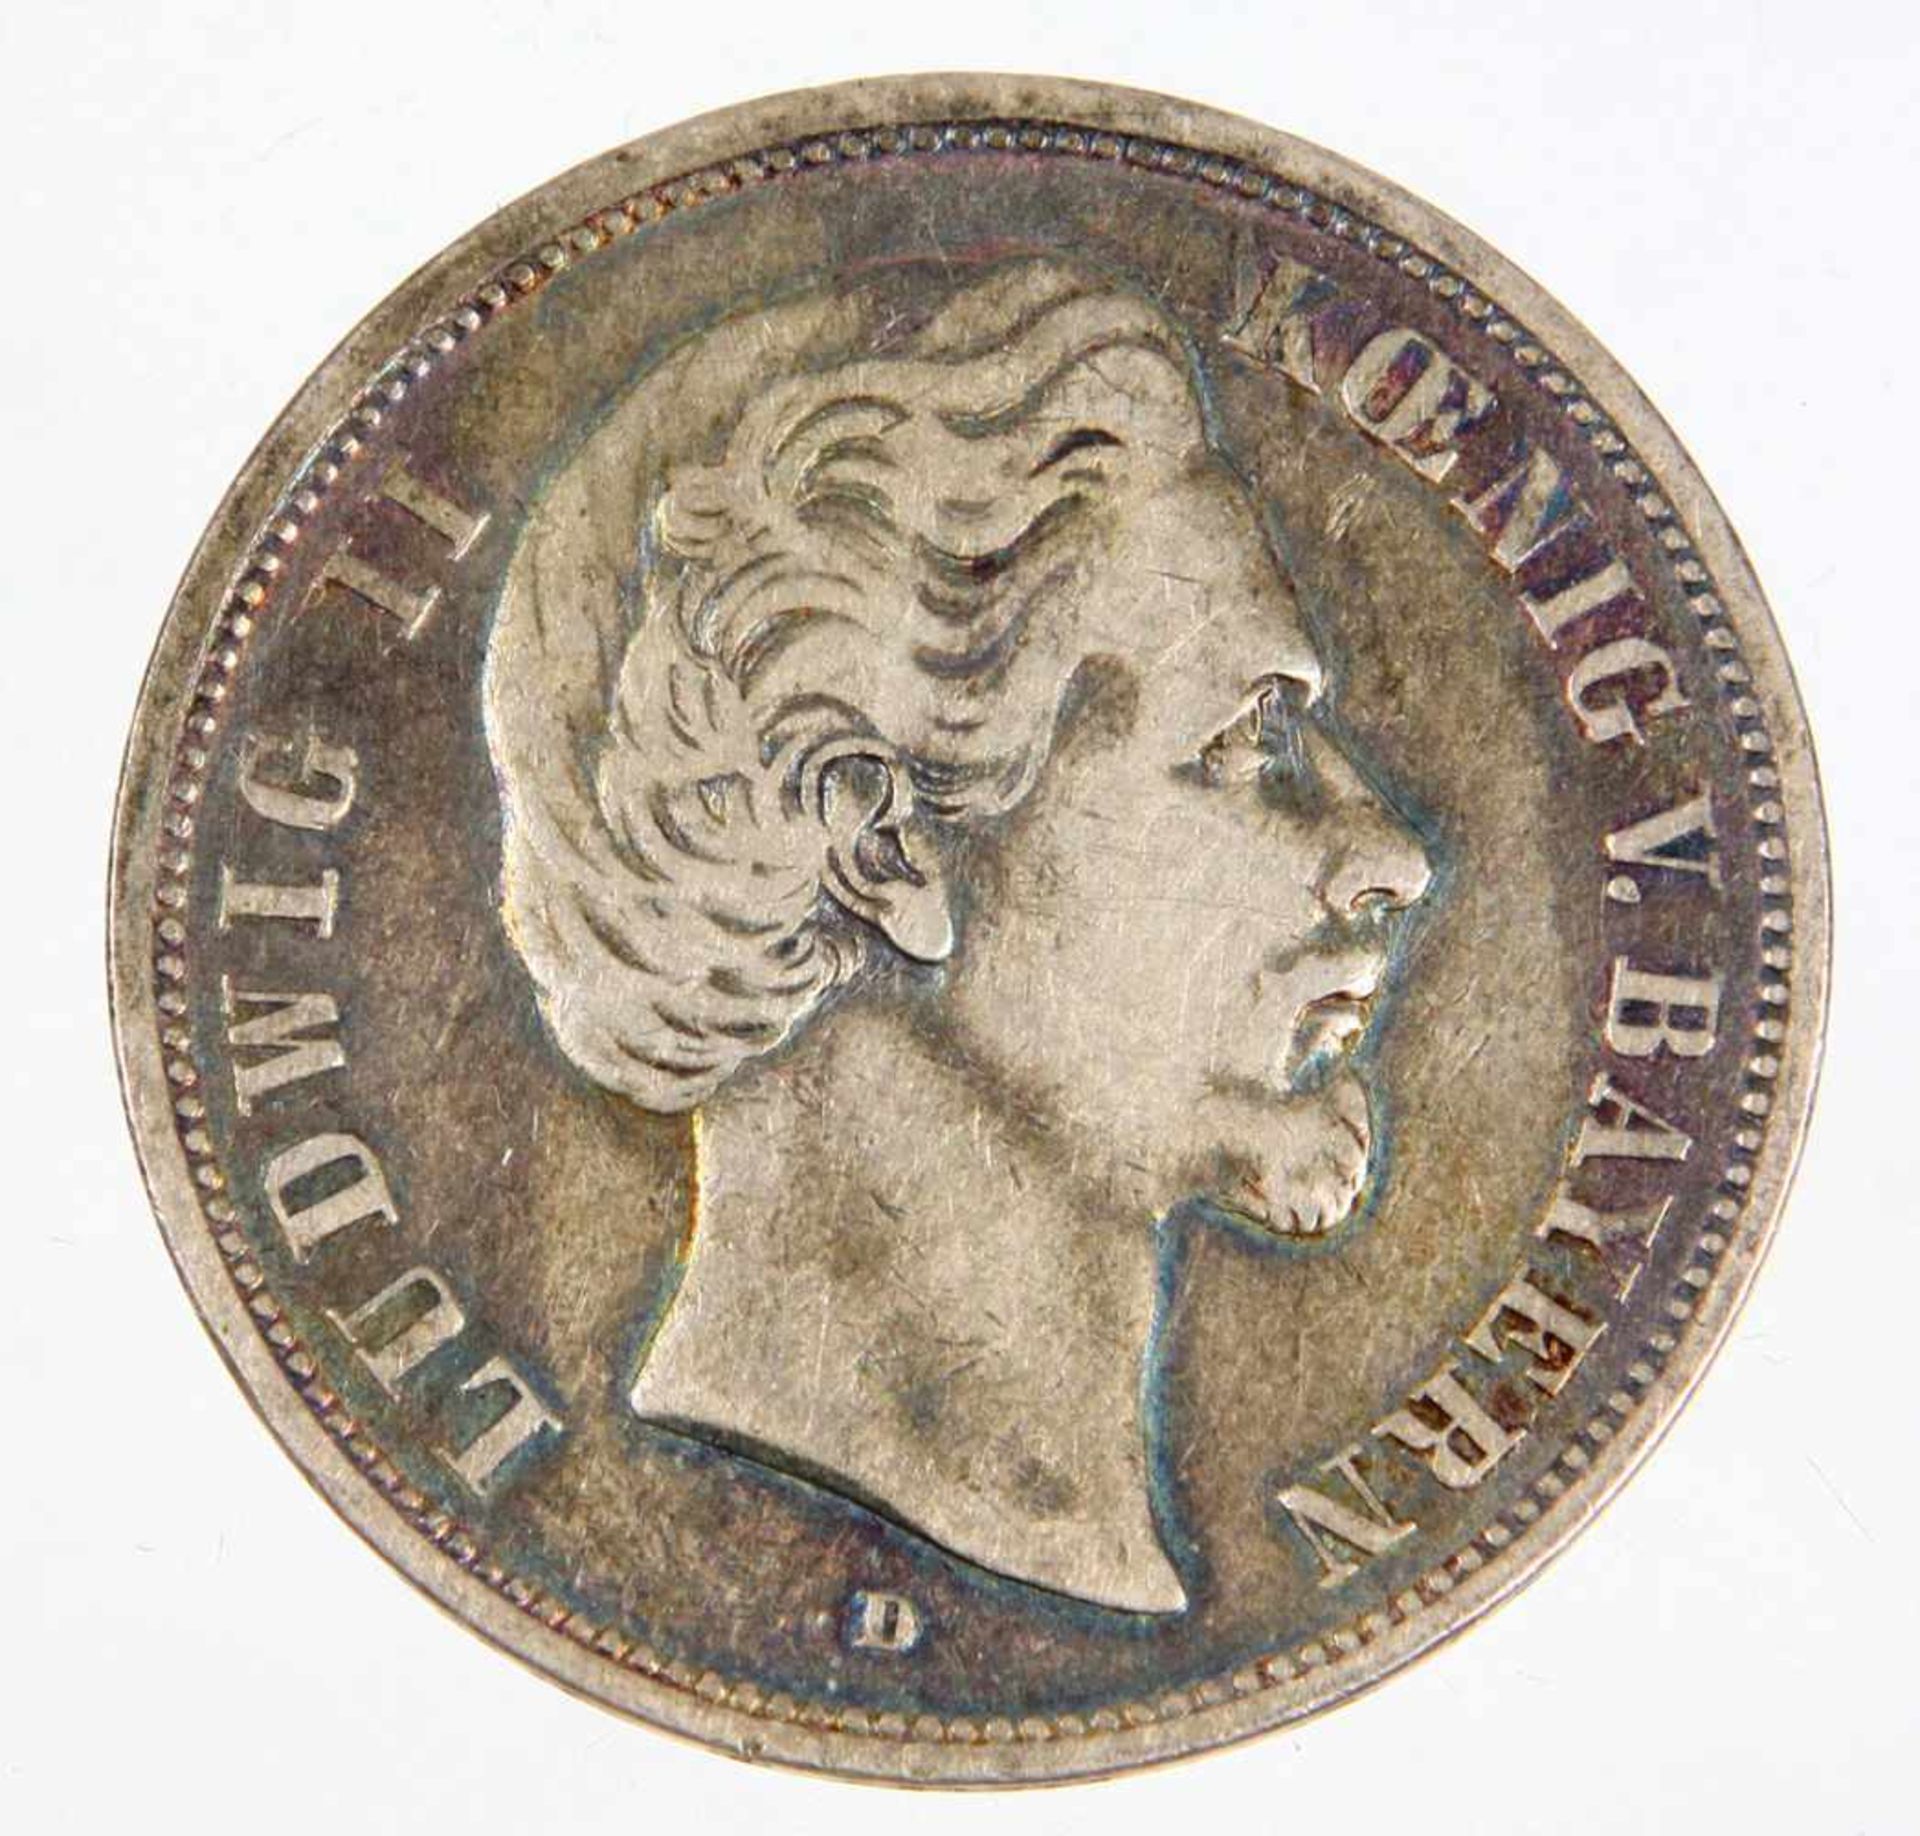 5 Mark Ludwig II König Bayern 1876 DSilbermünze, Fünf Mark Deutsches Reich 1876, so um gekrönten